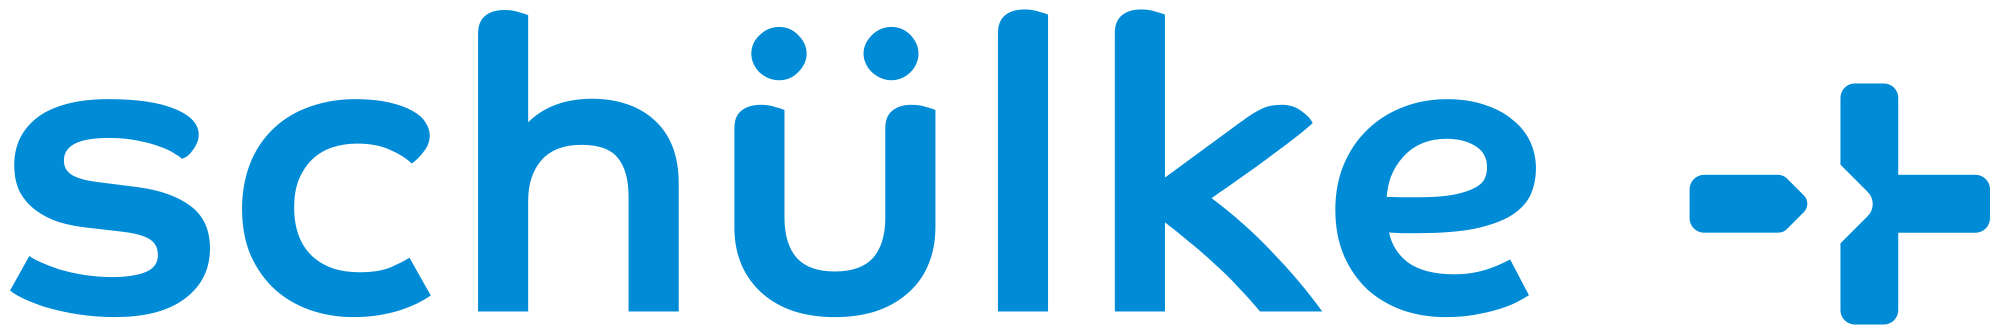 schulke logo